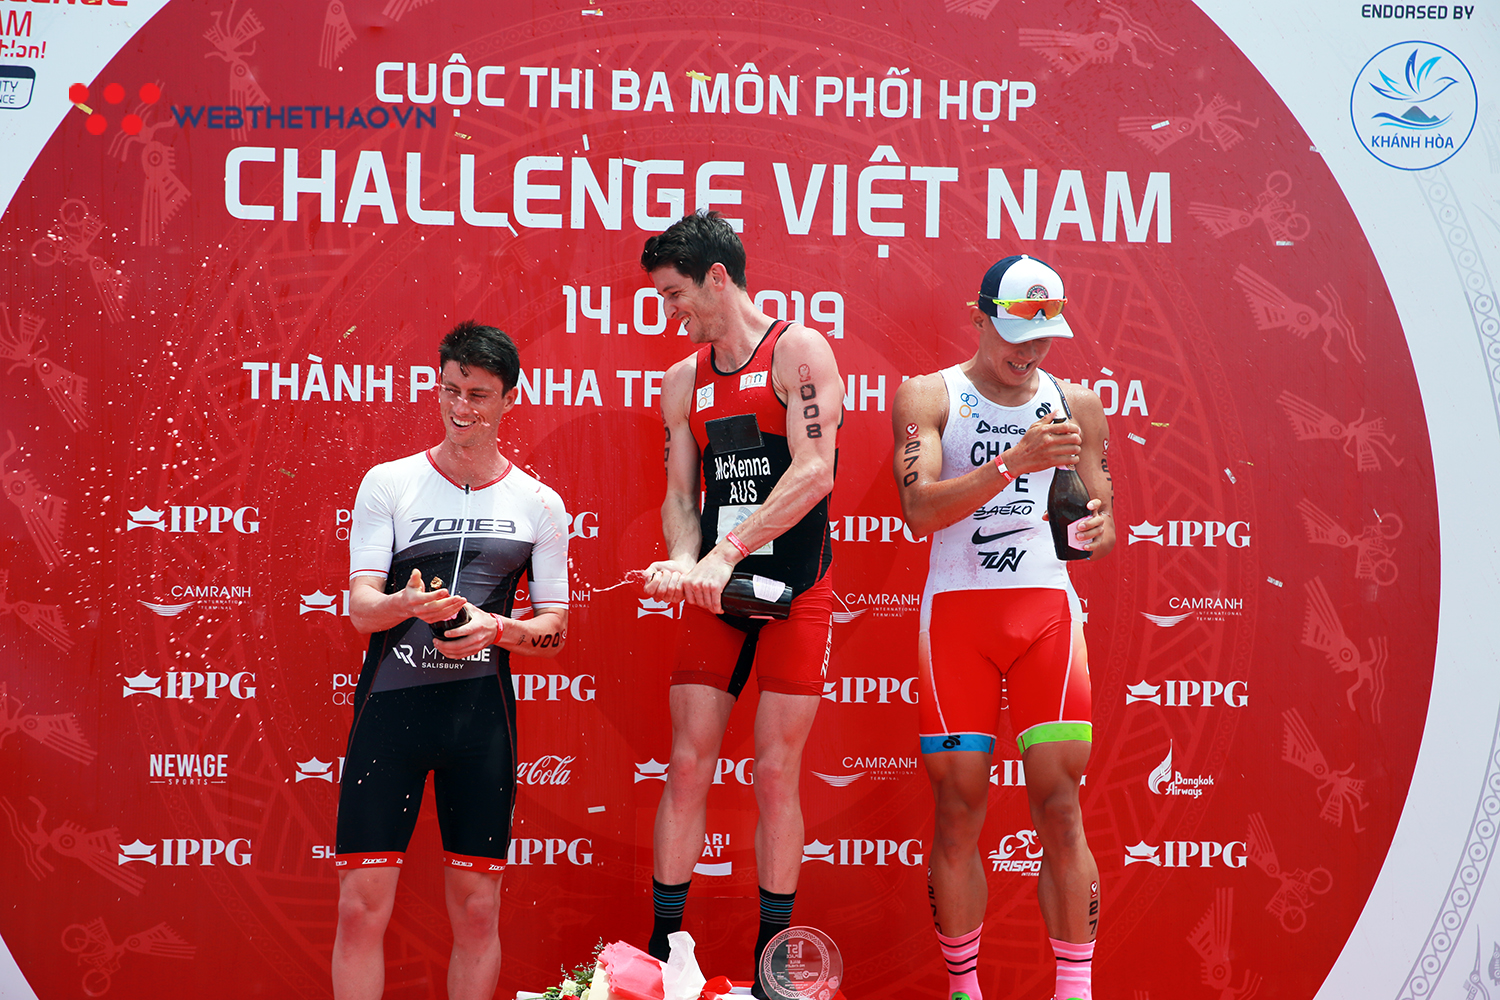 Sao Australia chiếm ưu thế Challenge Vietnam 2019, Hùng Hải - Tố Phương giành suất đến Đài Loan